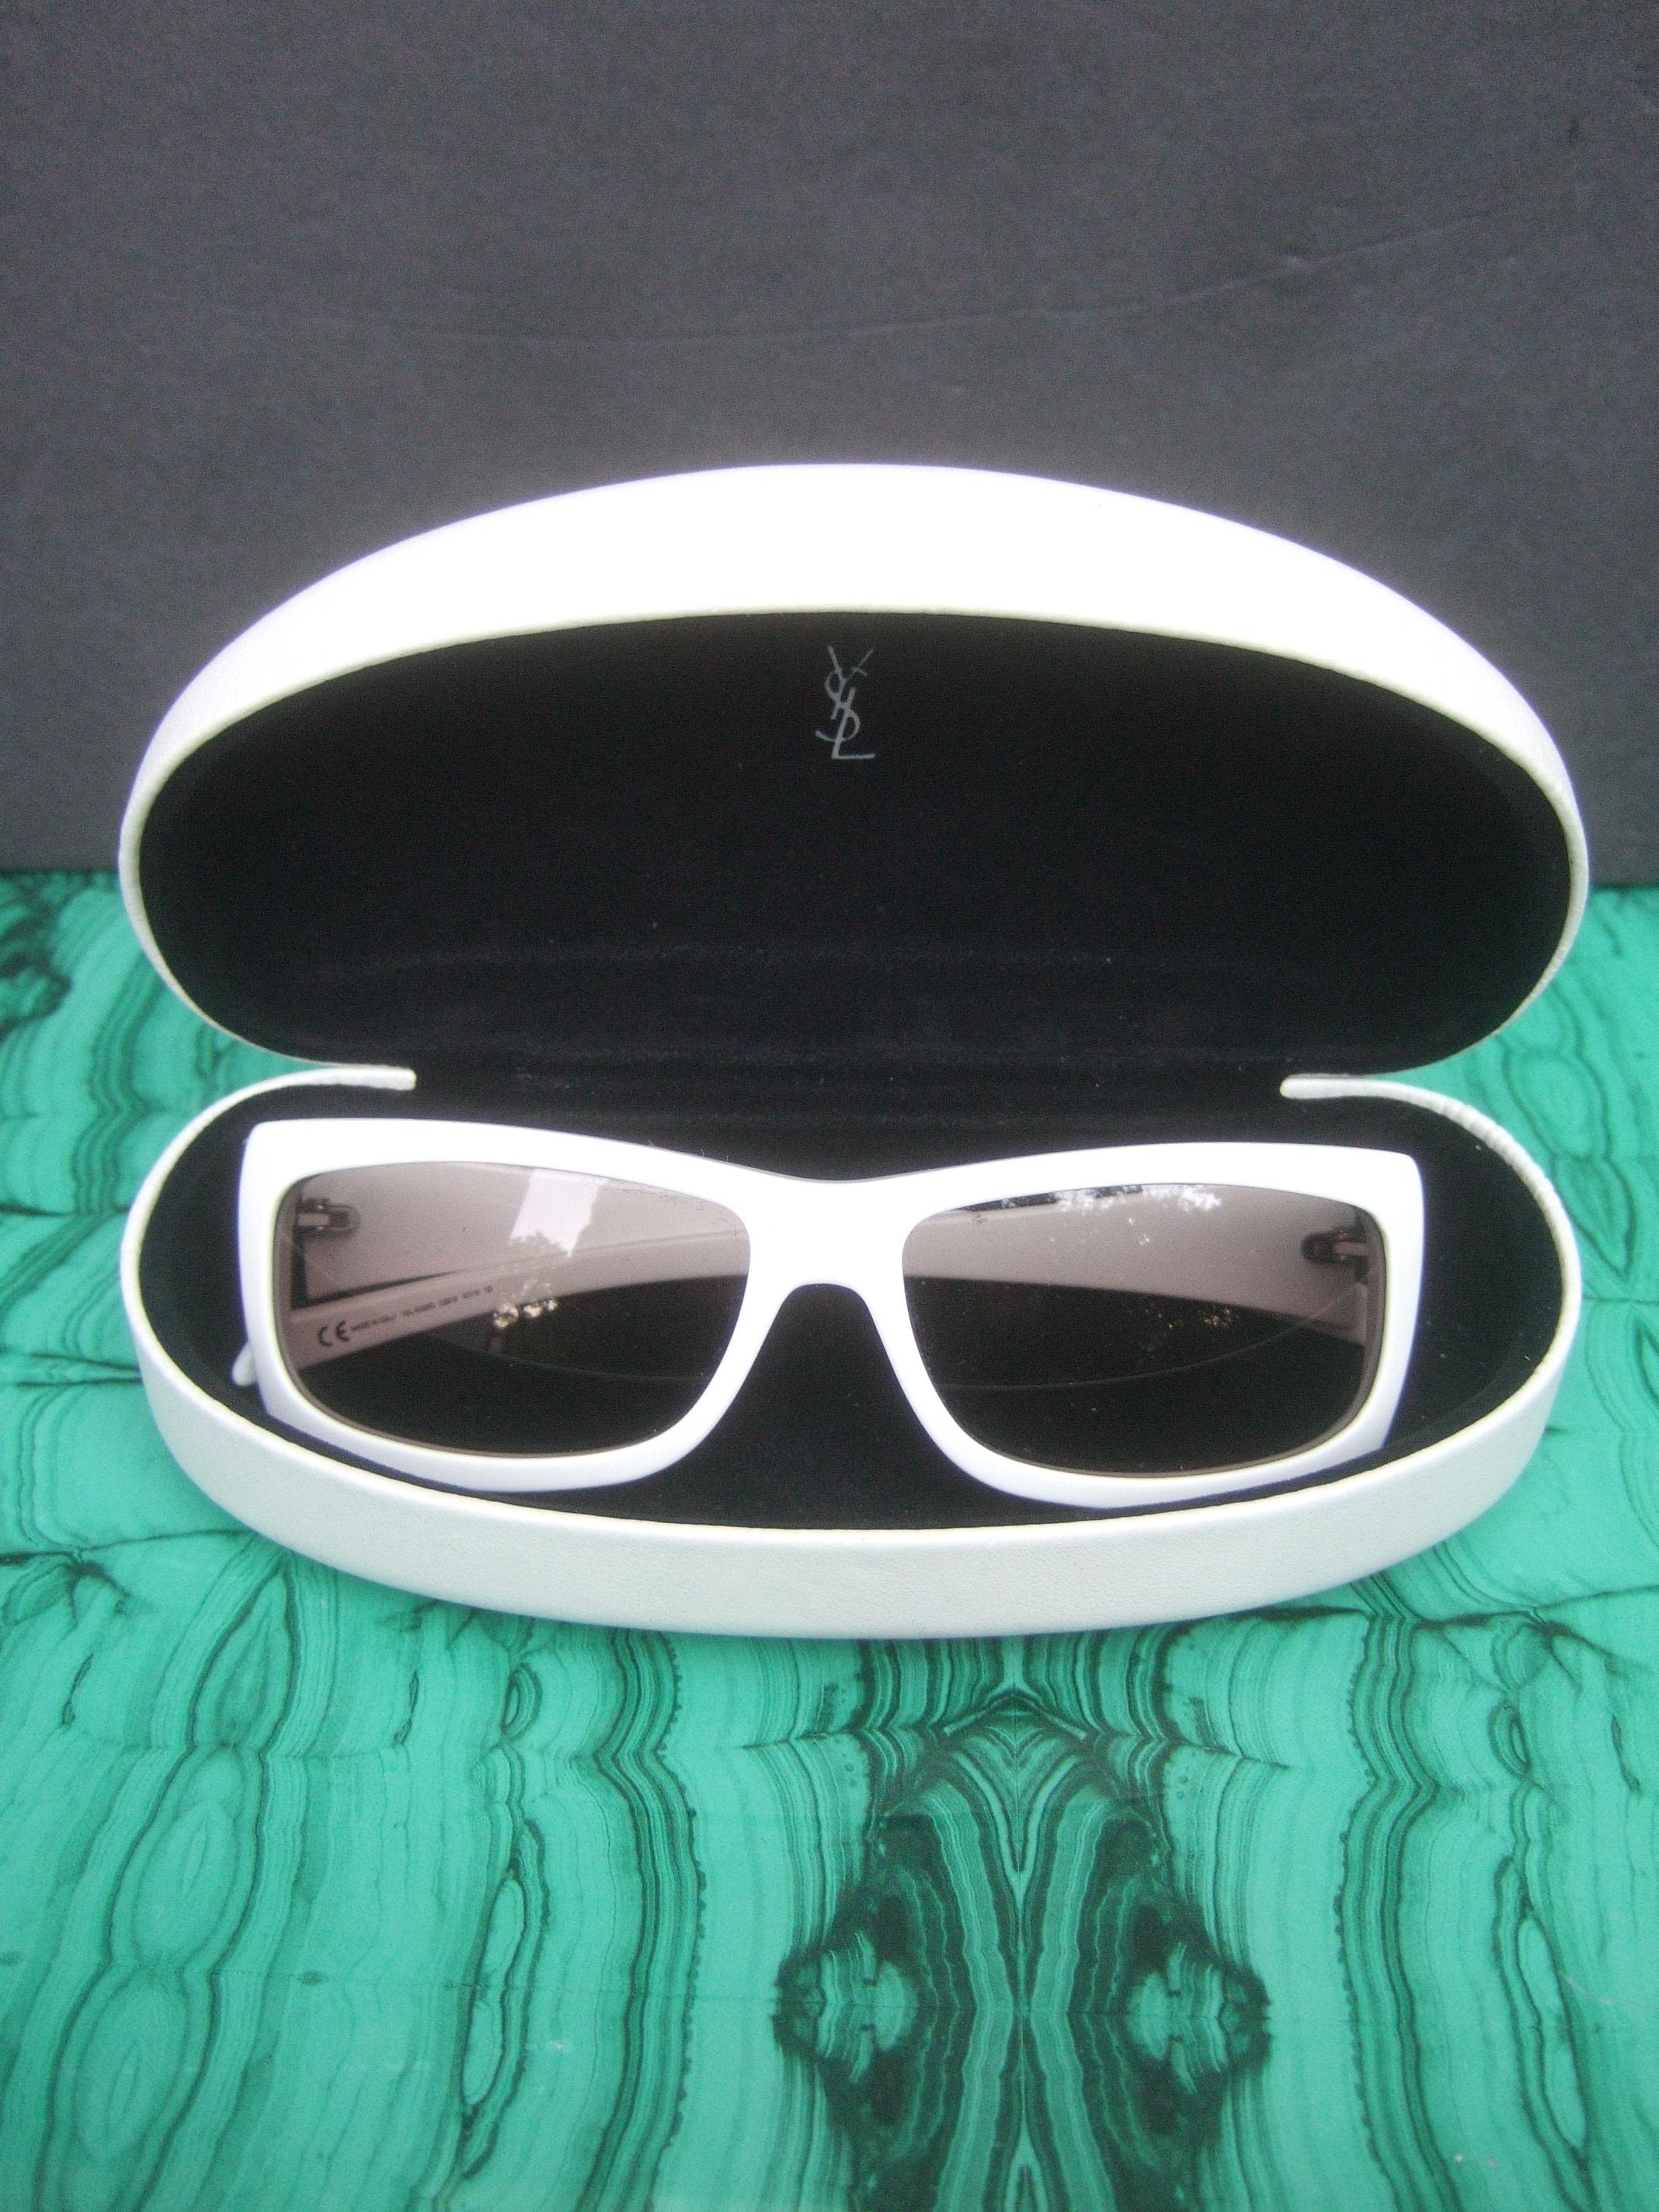 Yves Saint Laurent Italian White Plastic Frame Sunglasses in YSL Case c 1990s 2